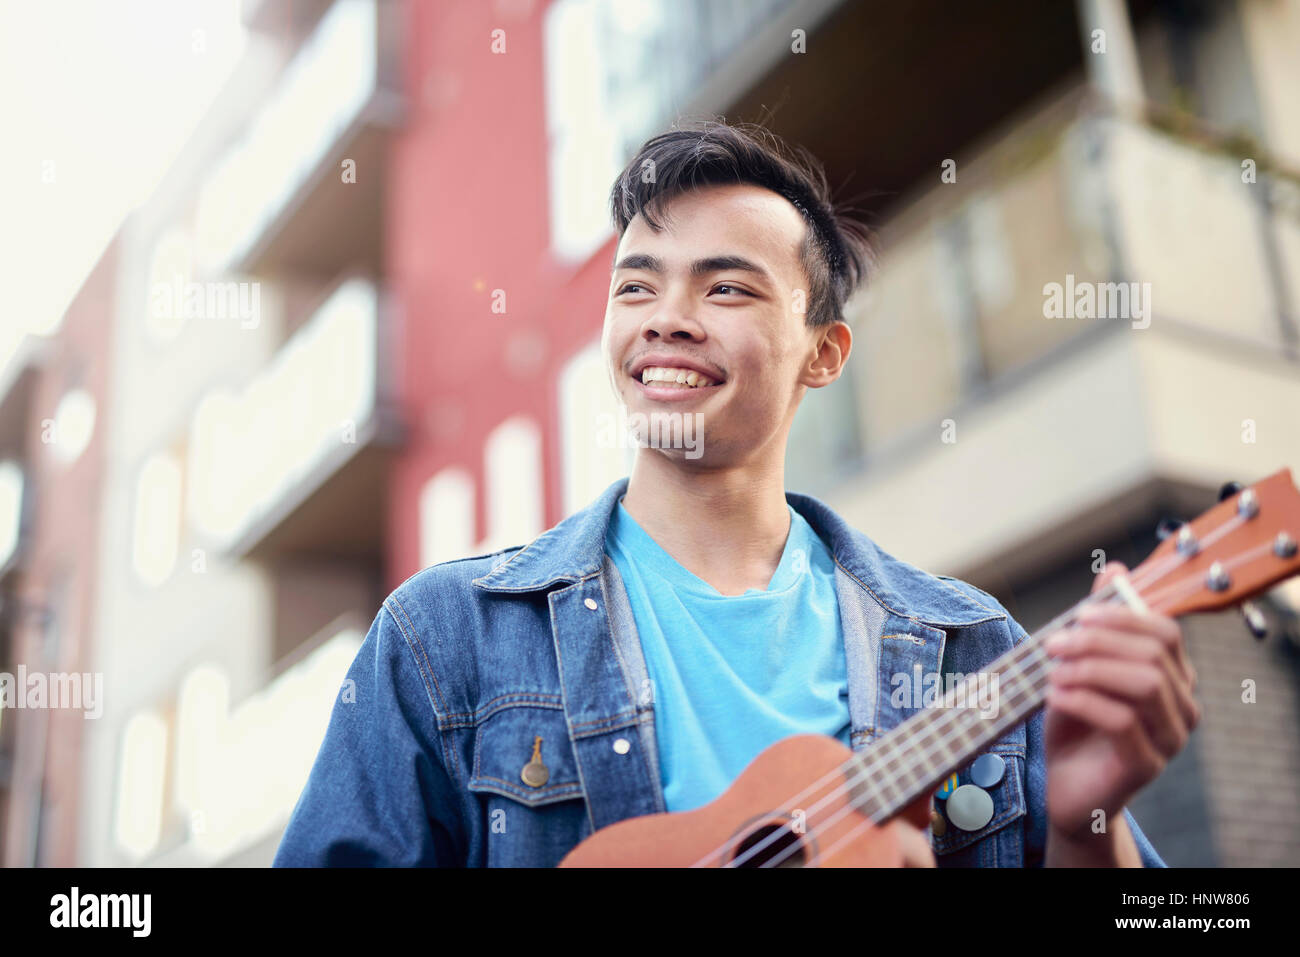 Young man on street playing ukulele Stock Photo